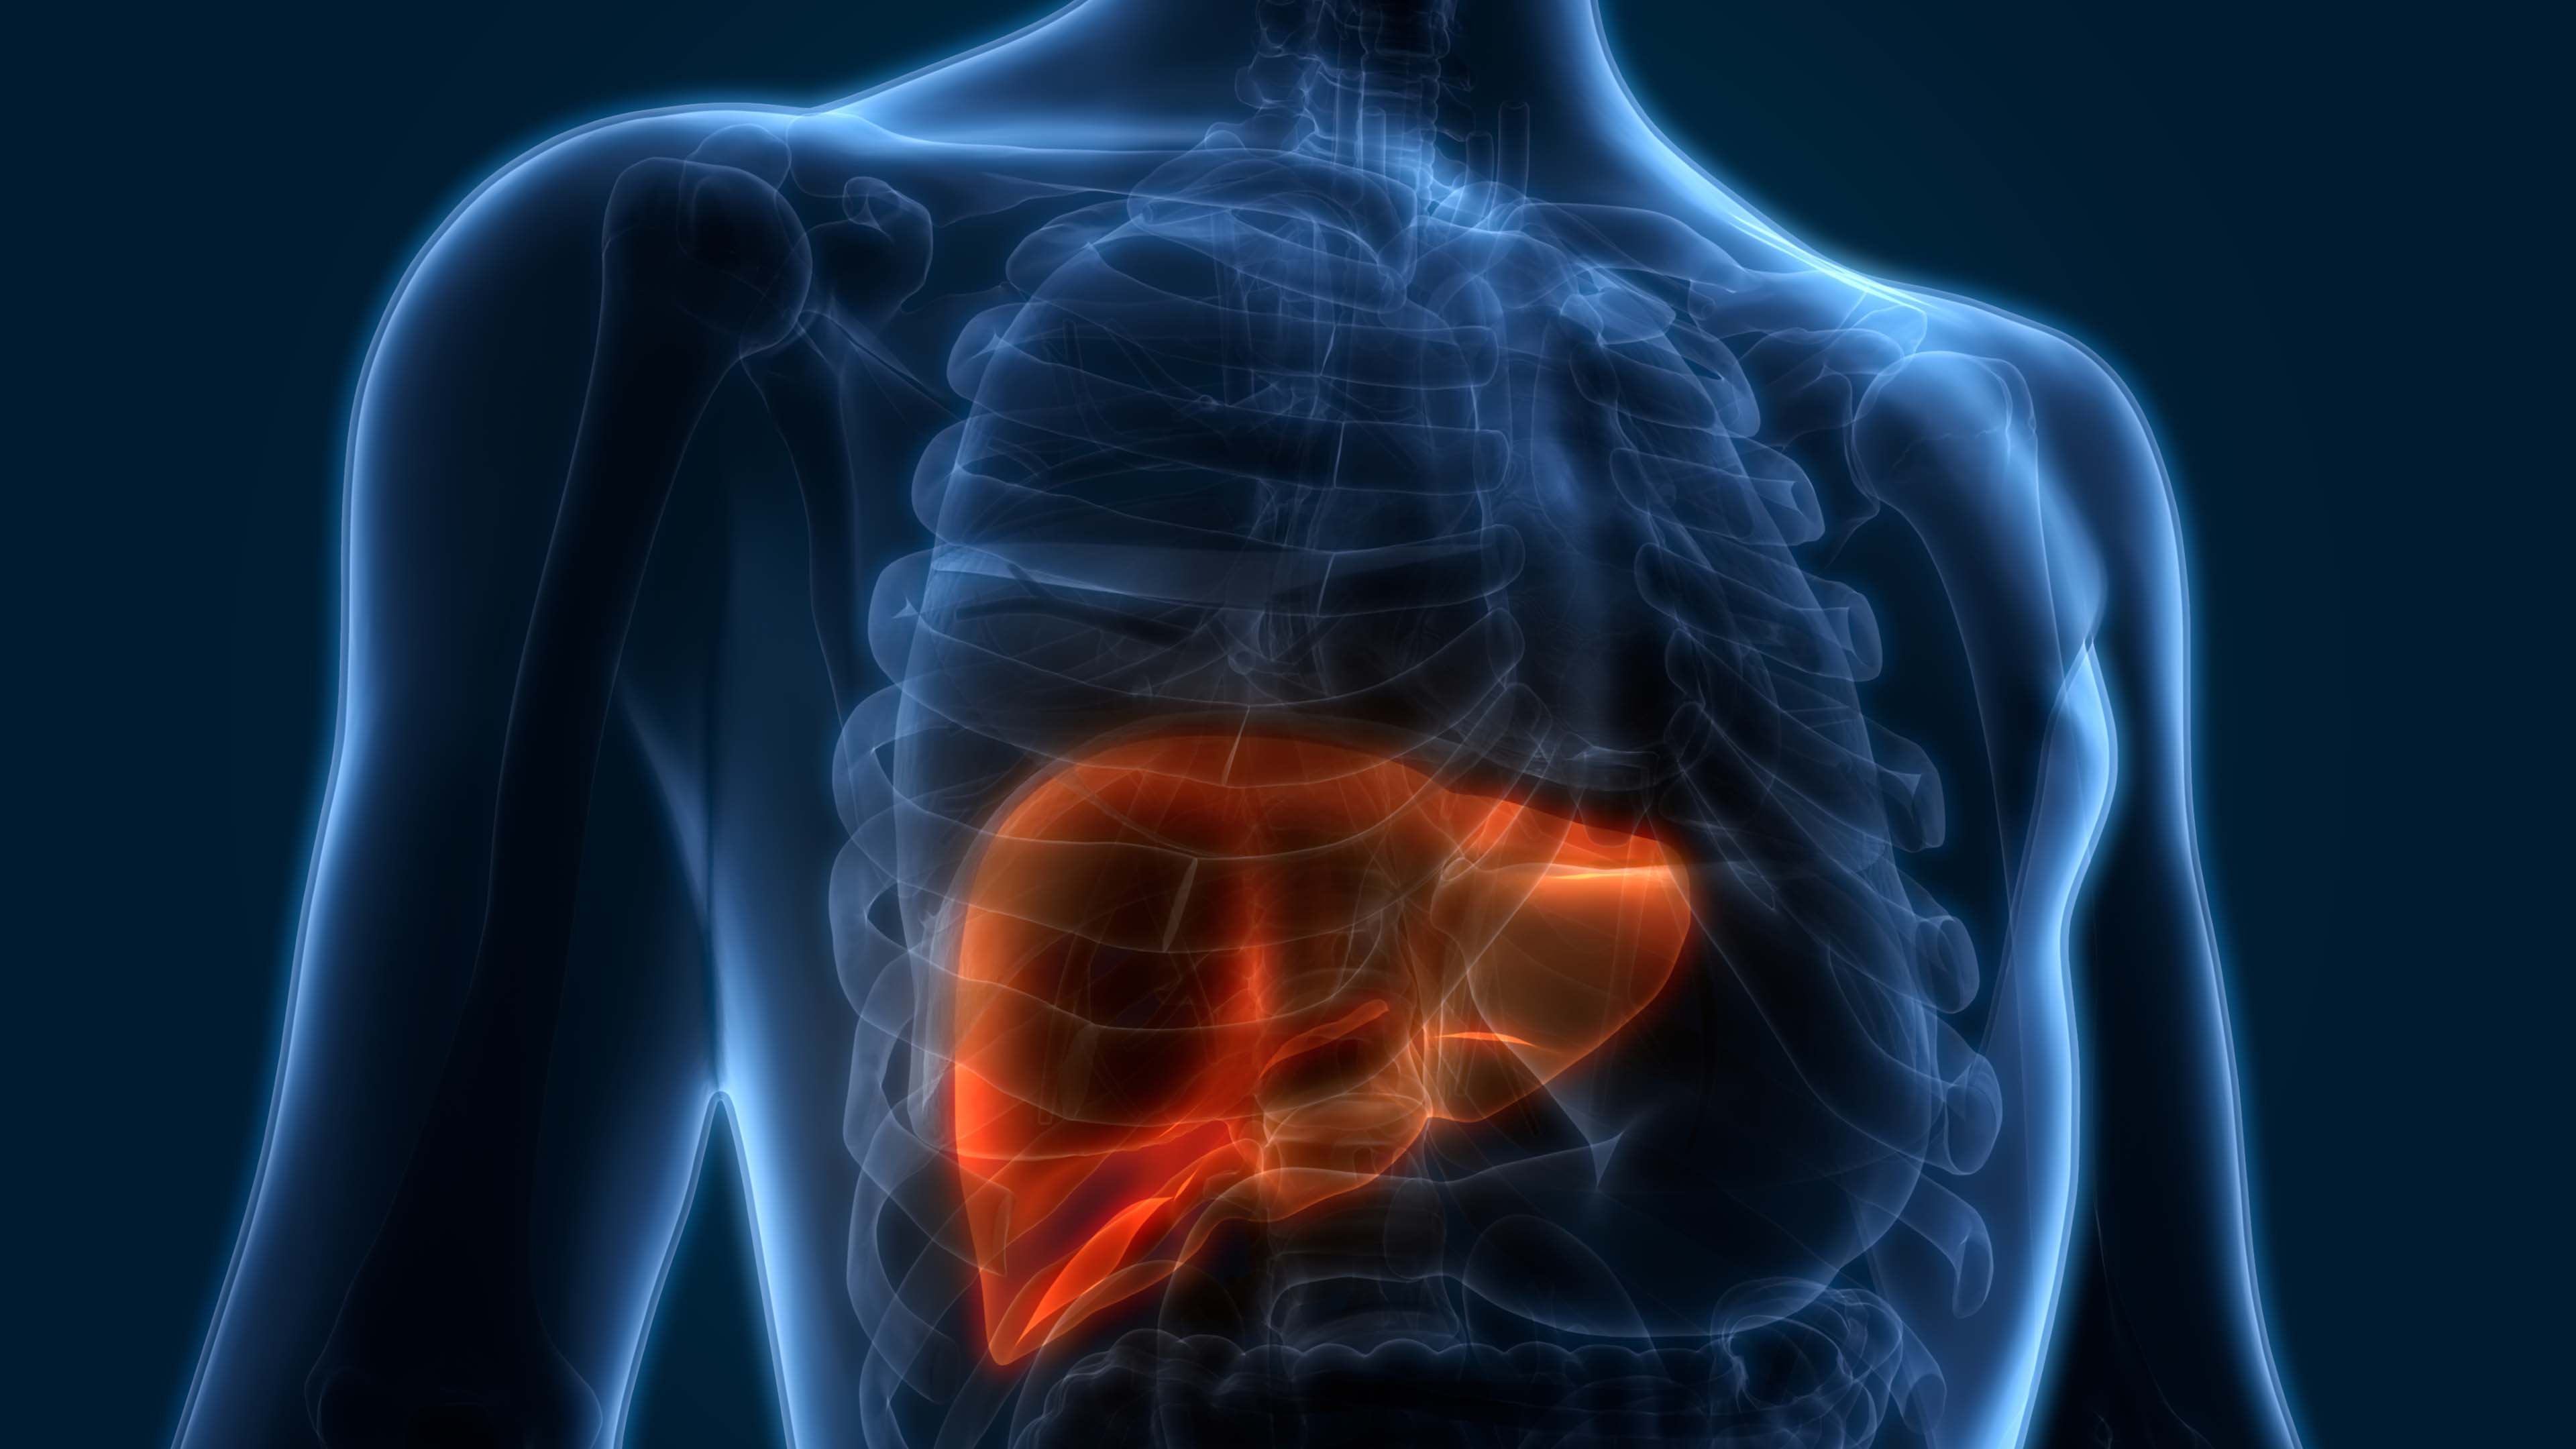 Medical illustration of a liver